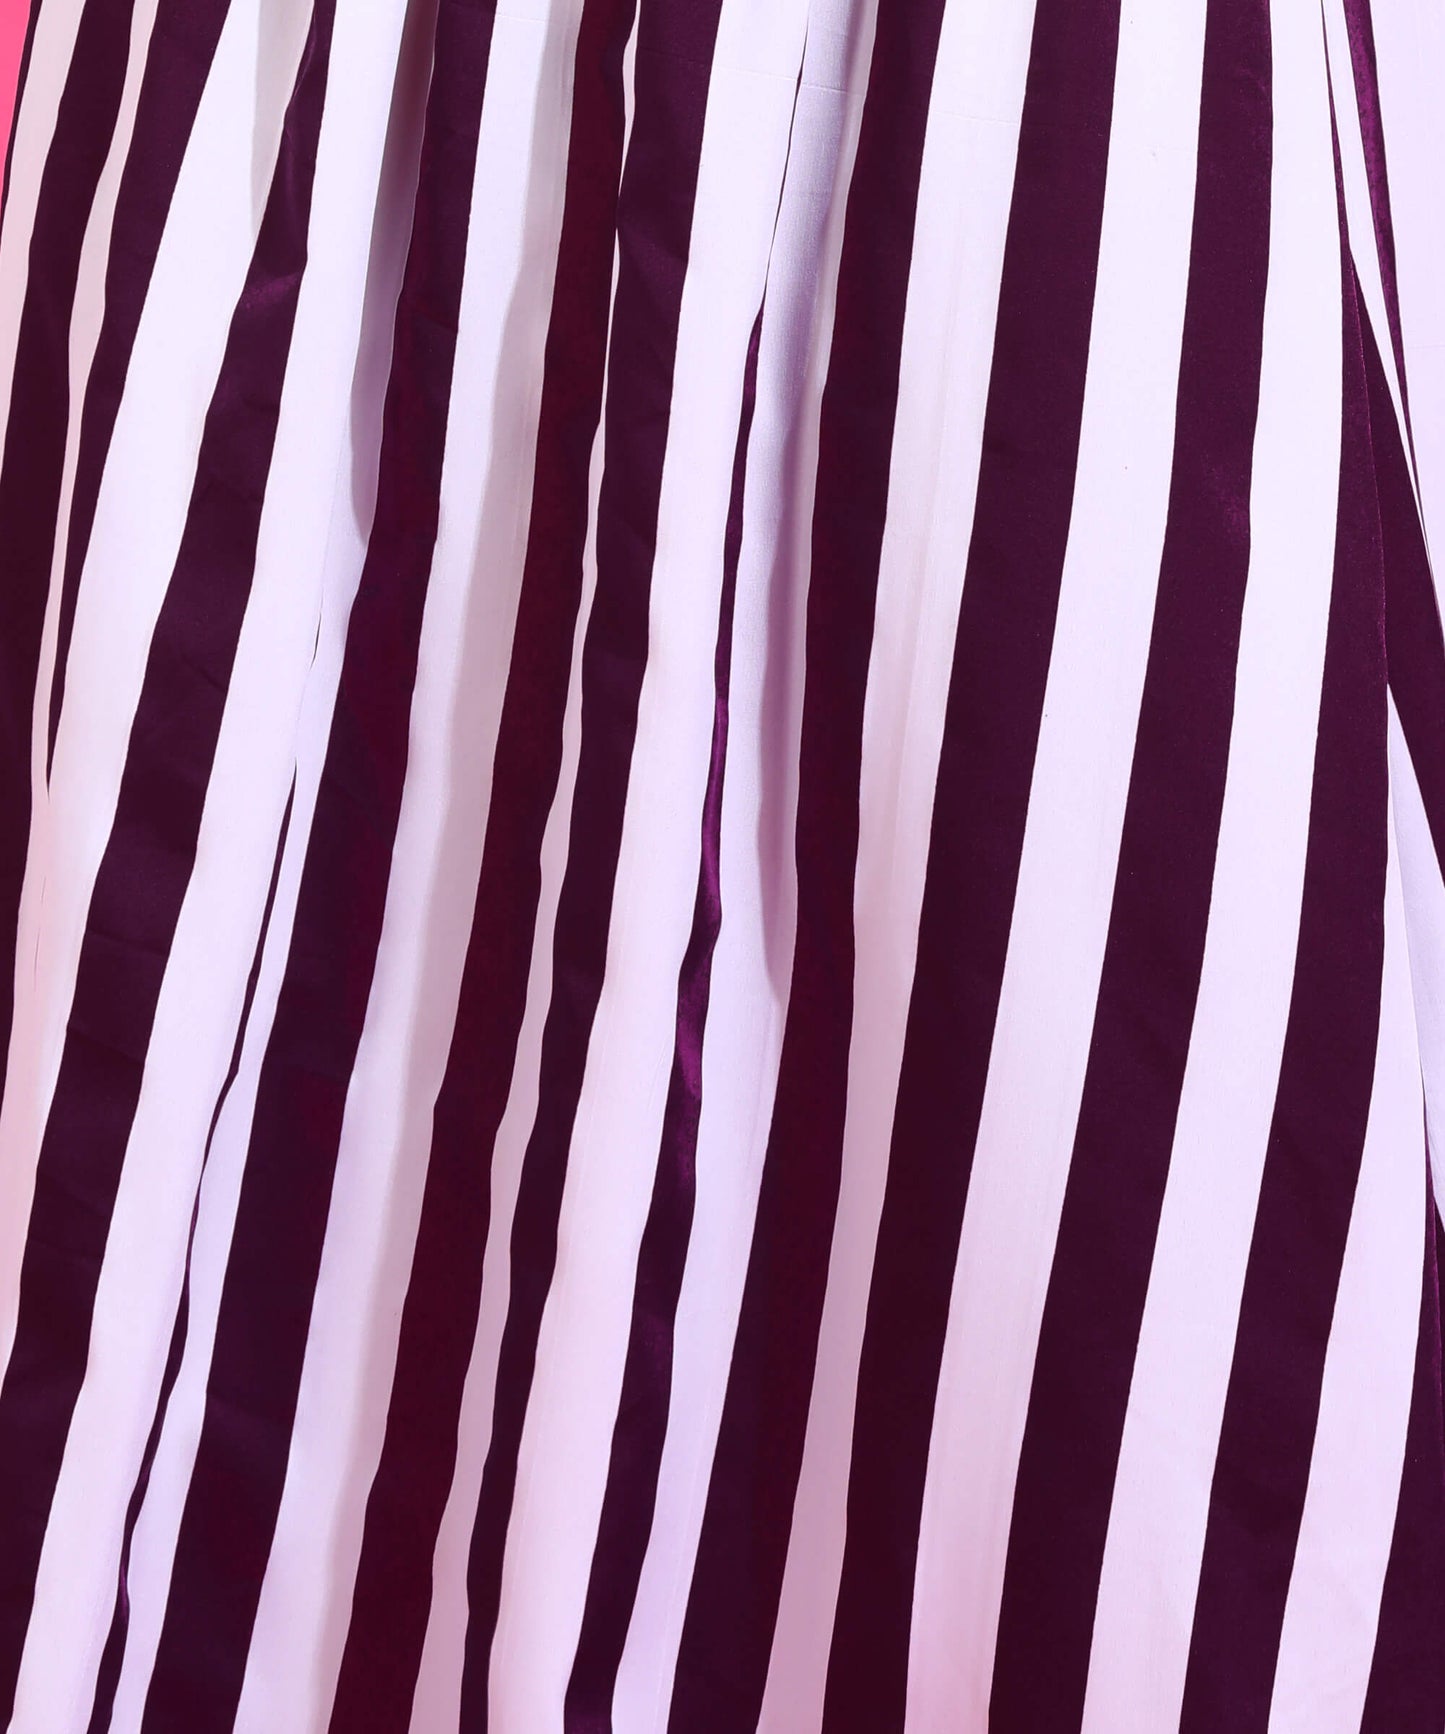 Popwings Women Casual Purple & White Stripe Off Shoulder Long Maxi Dress